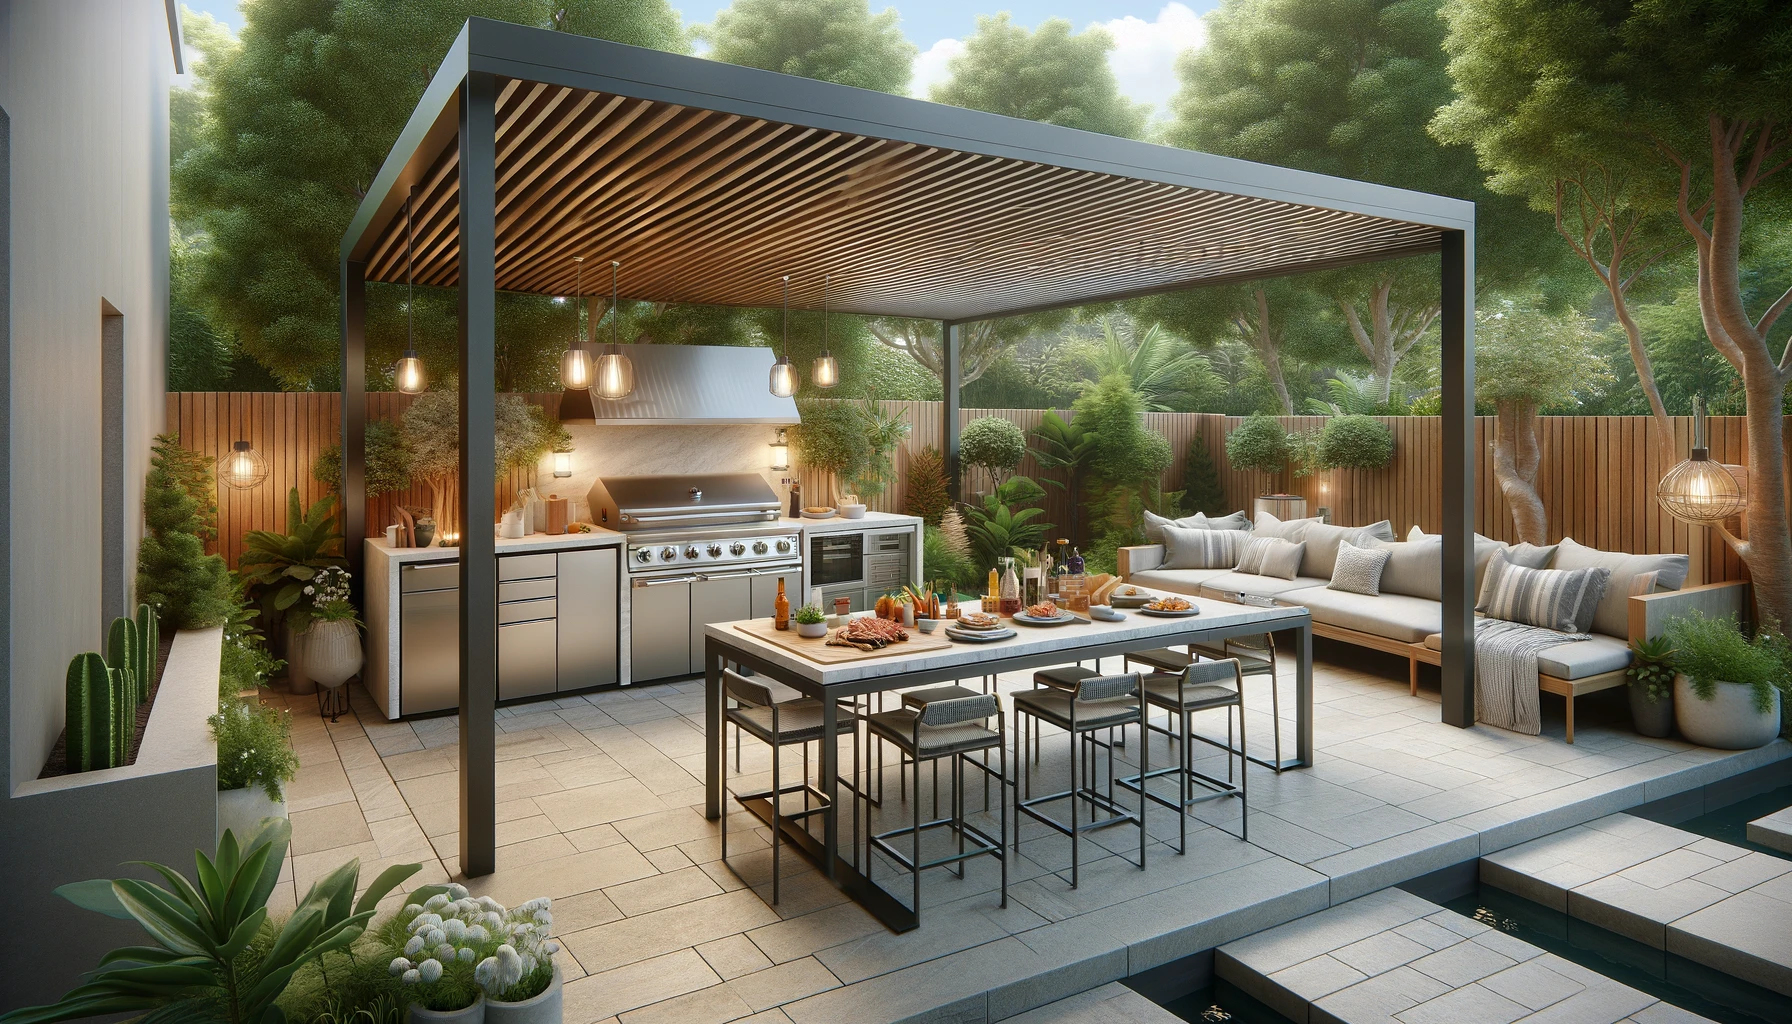 ground, patio, outdoor kitchen design